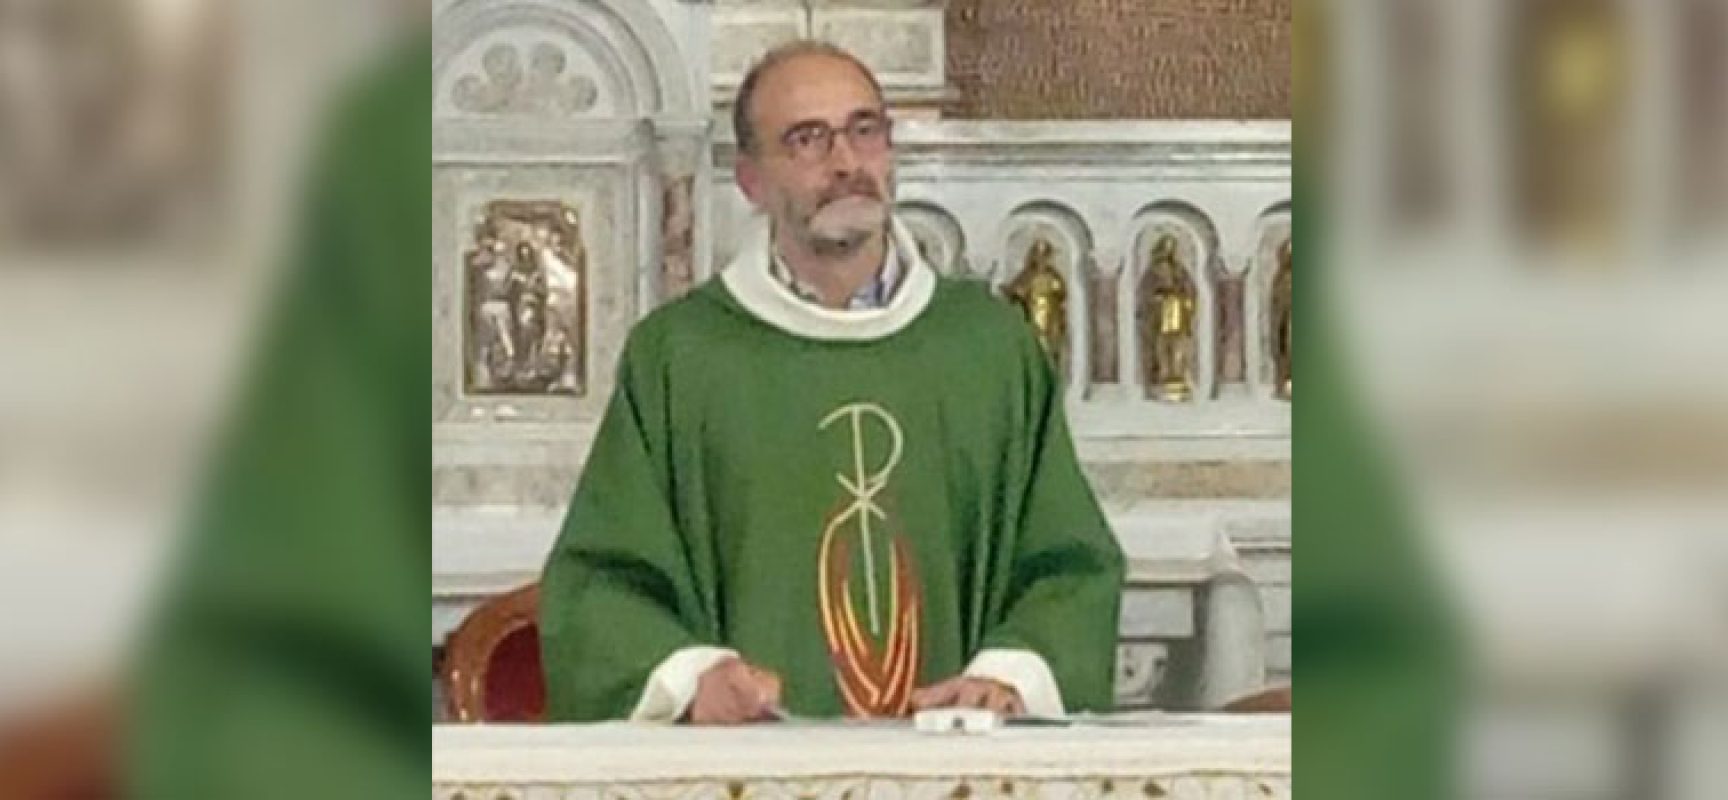 Ingresso ufficiale del nuovo parroco per la parrocchia di San Silvestro